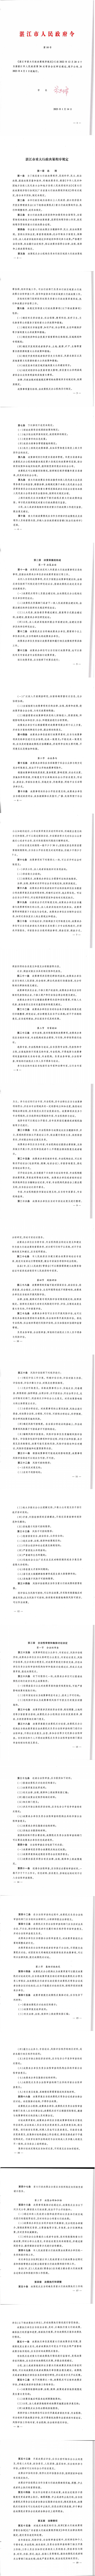 湛江市重大行政决策程序规定（湛江市人民政府令第10号）_0.jpg